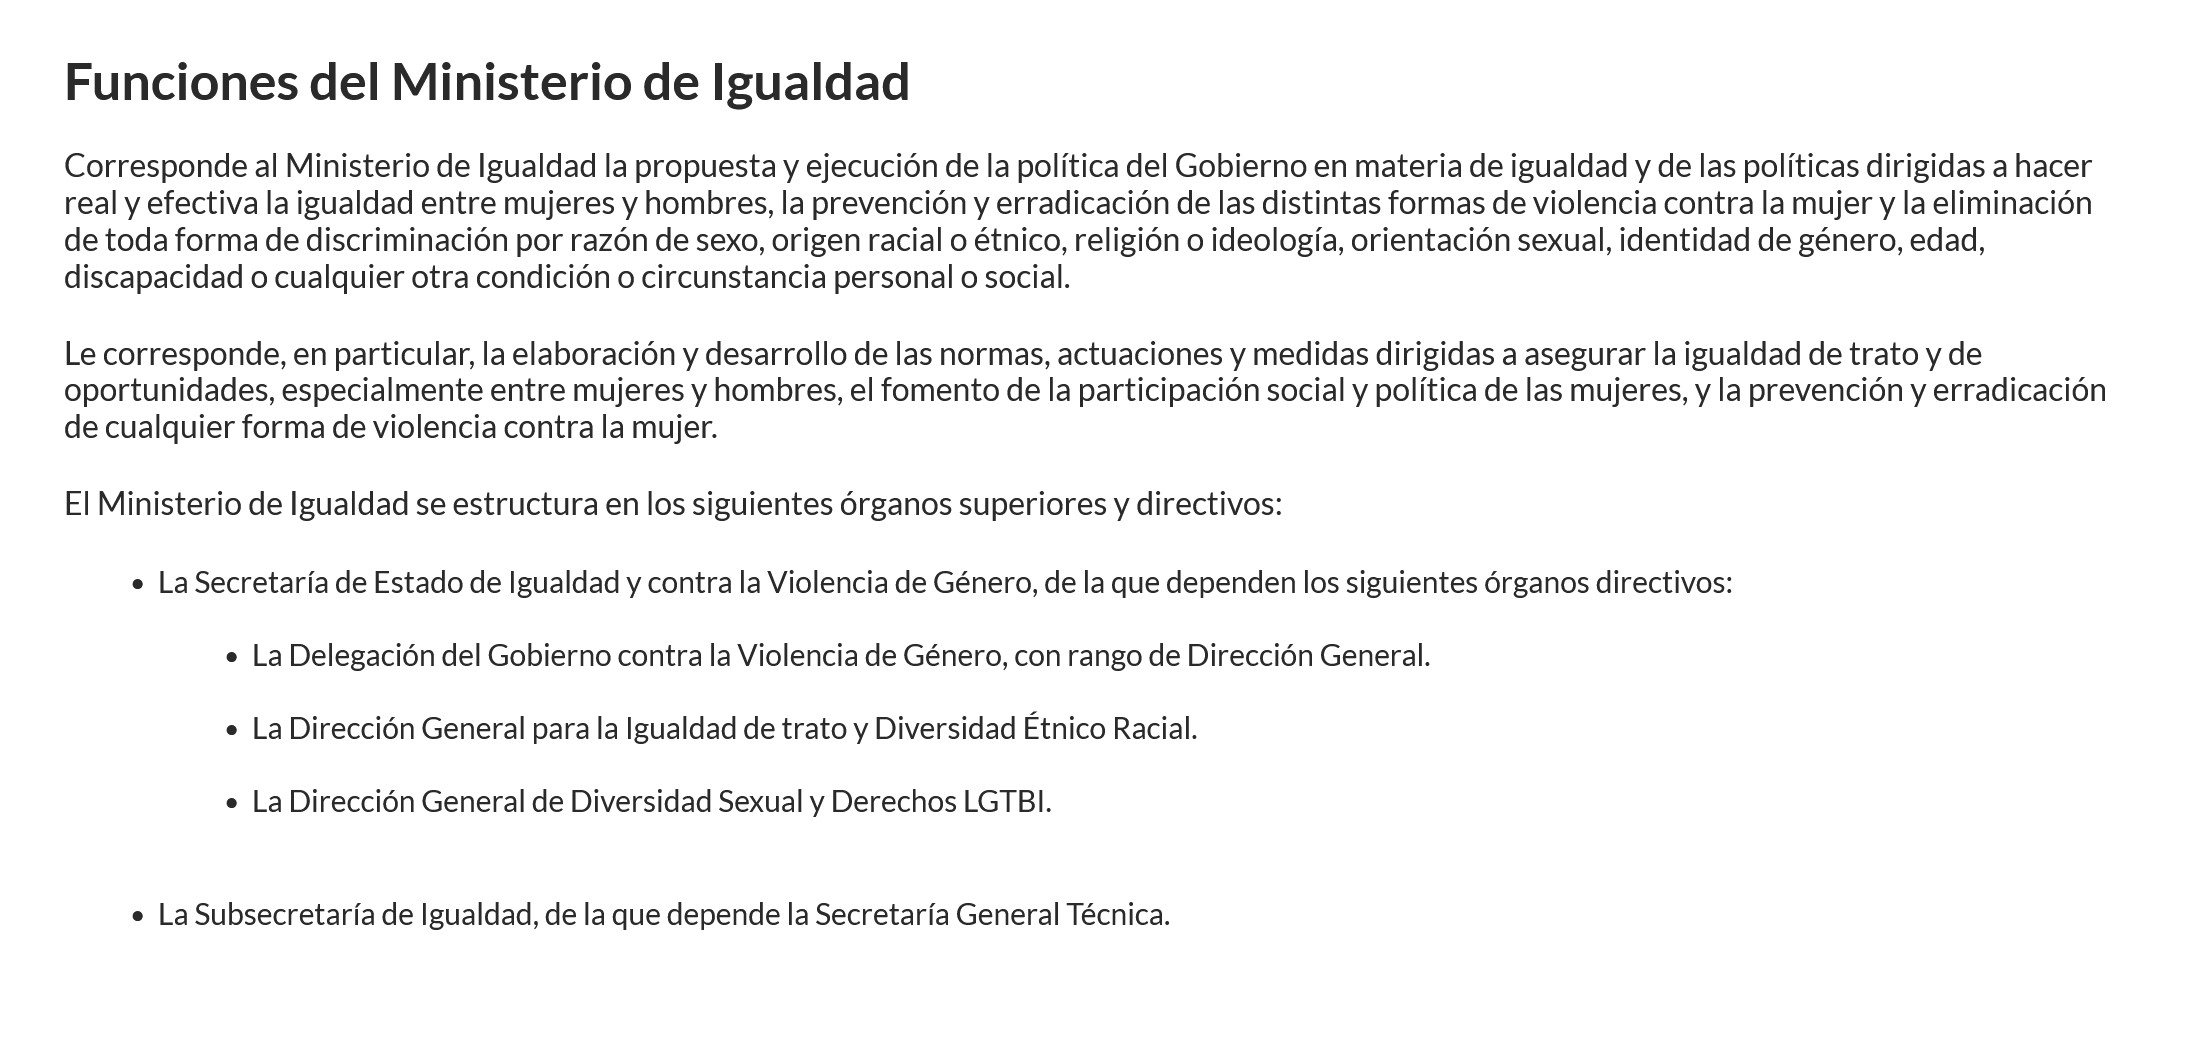 Описание функций министерства. Источник: igualdad.gob.es